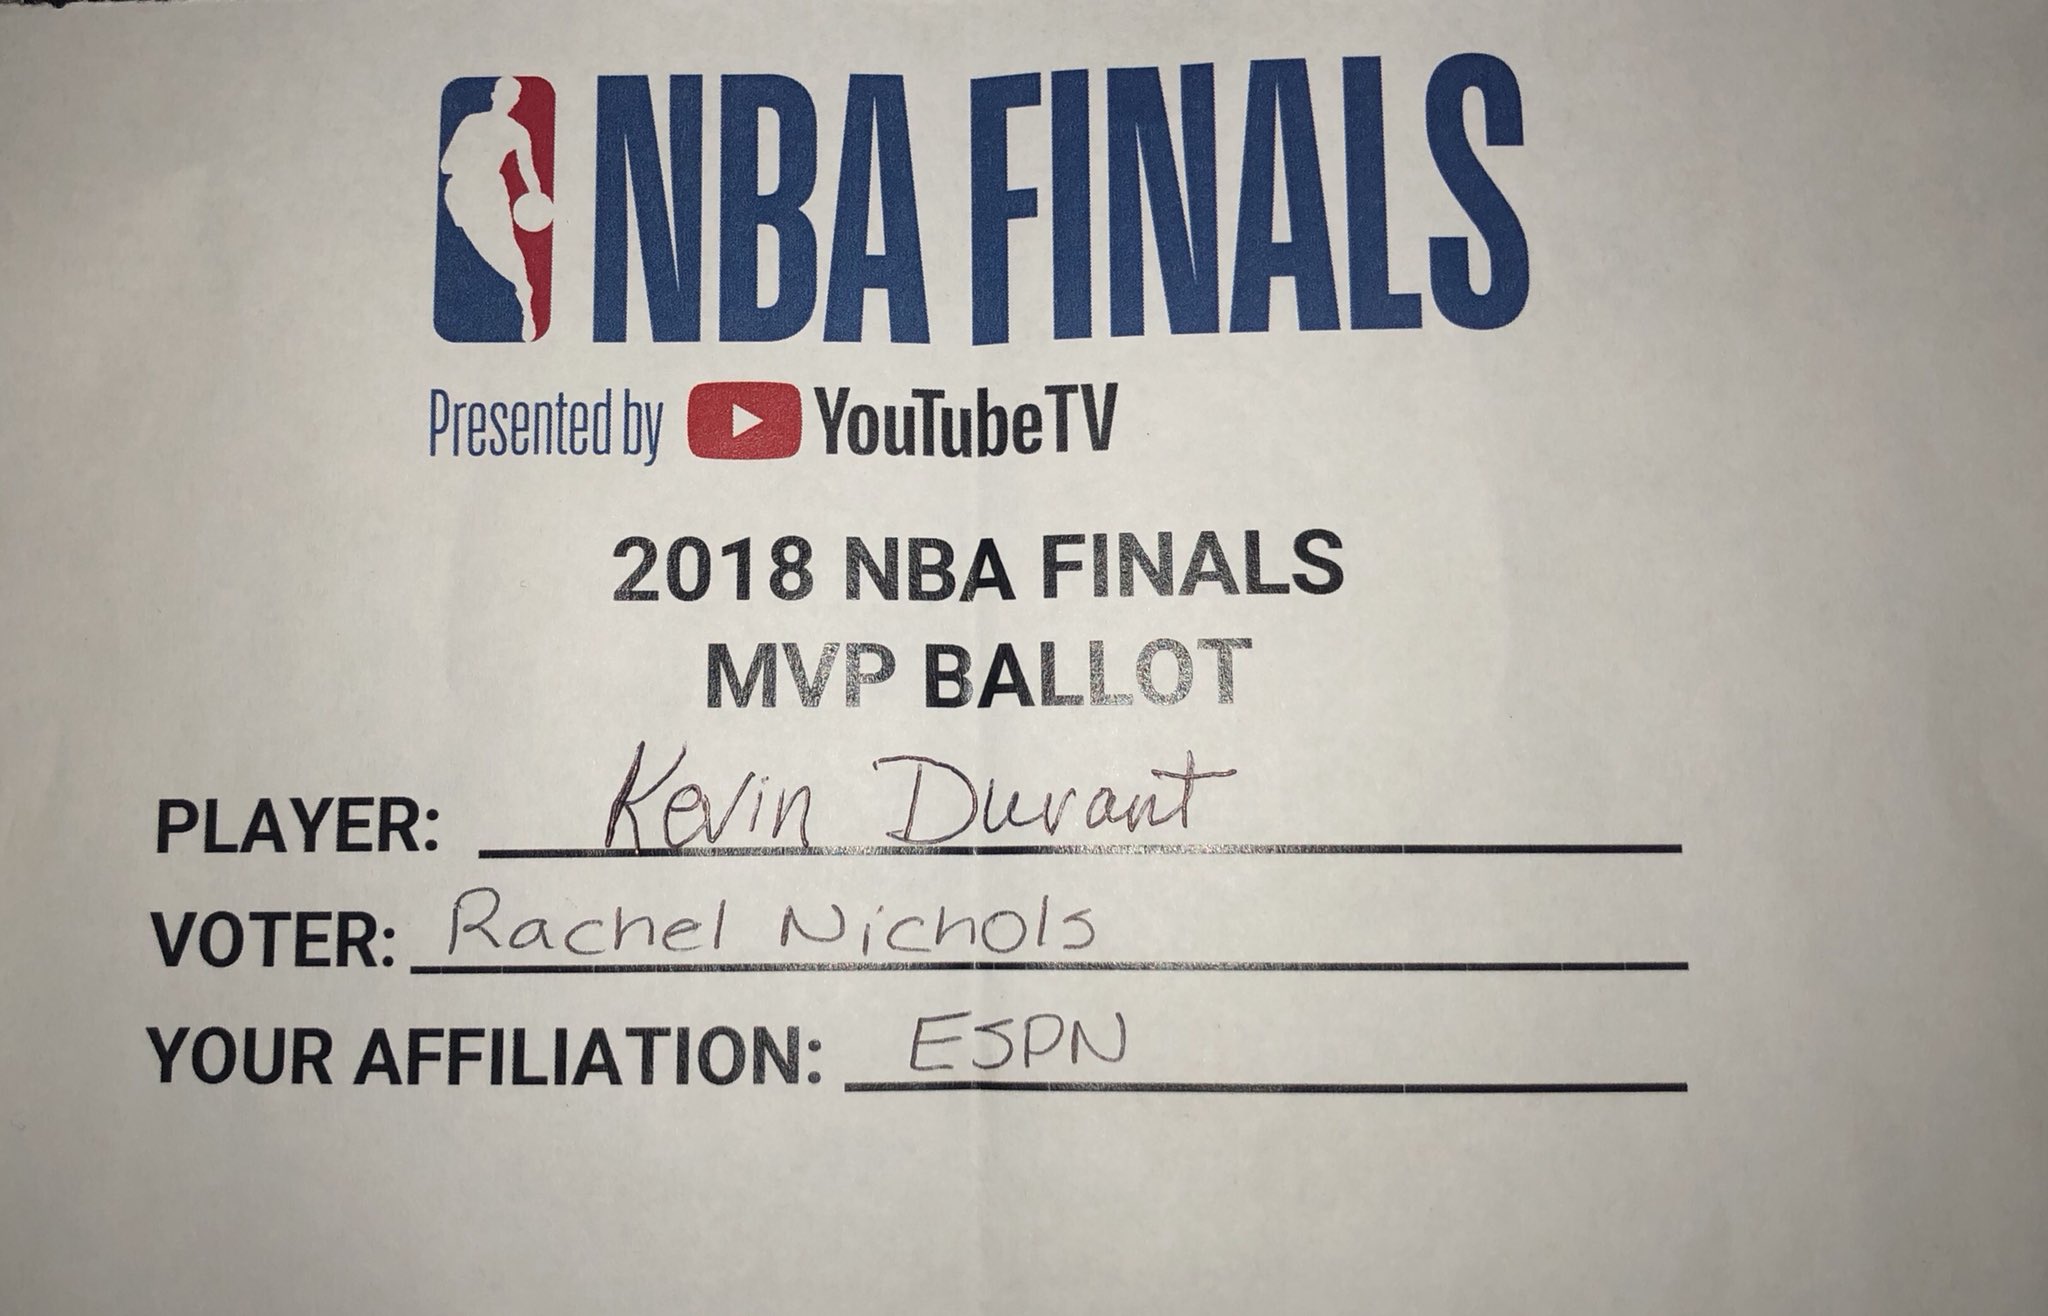 Kevin Durant named NBA Finals MVP - ESPN